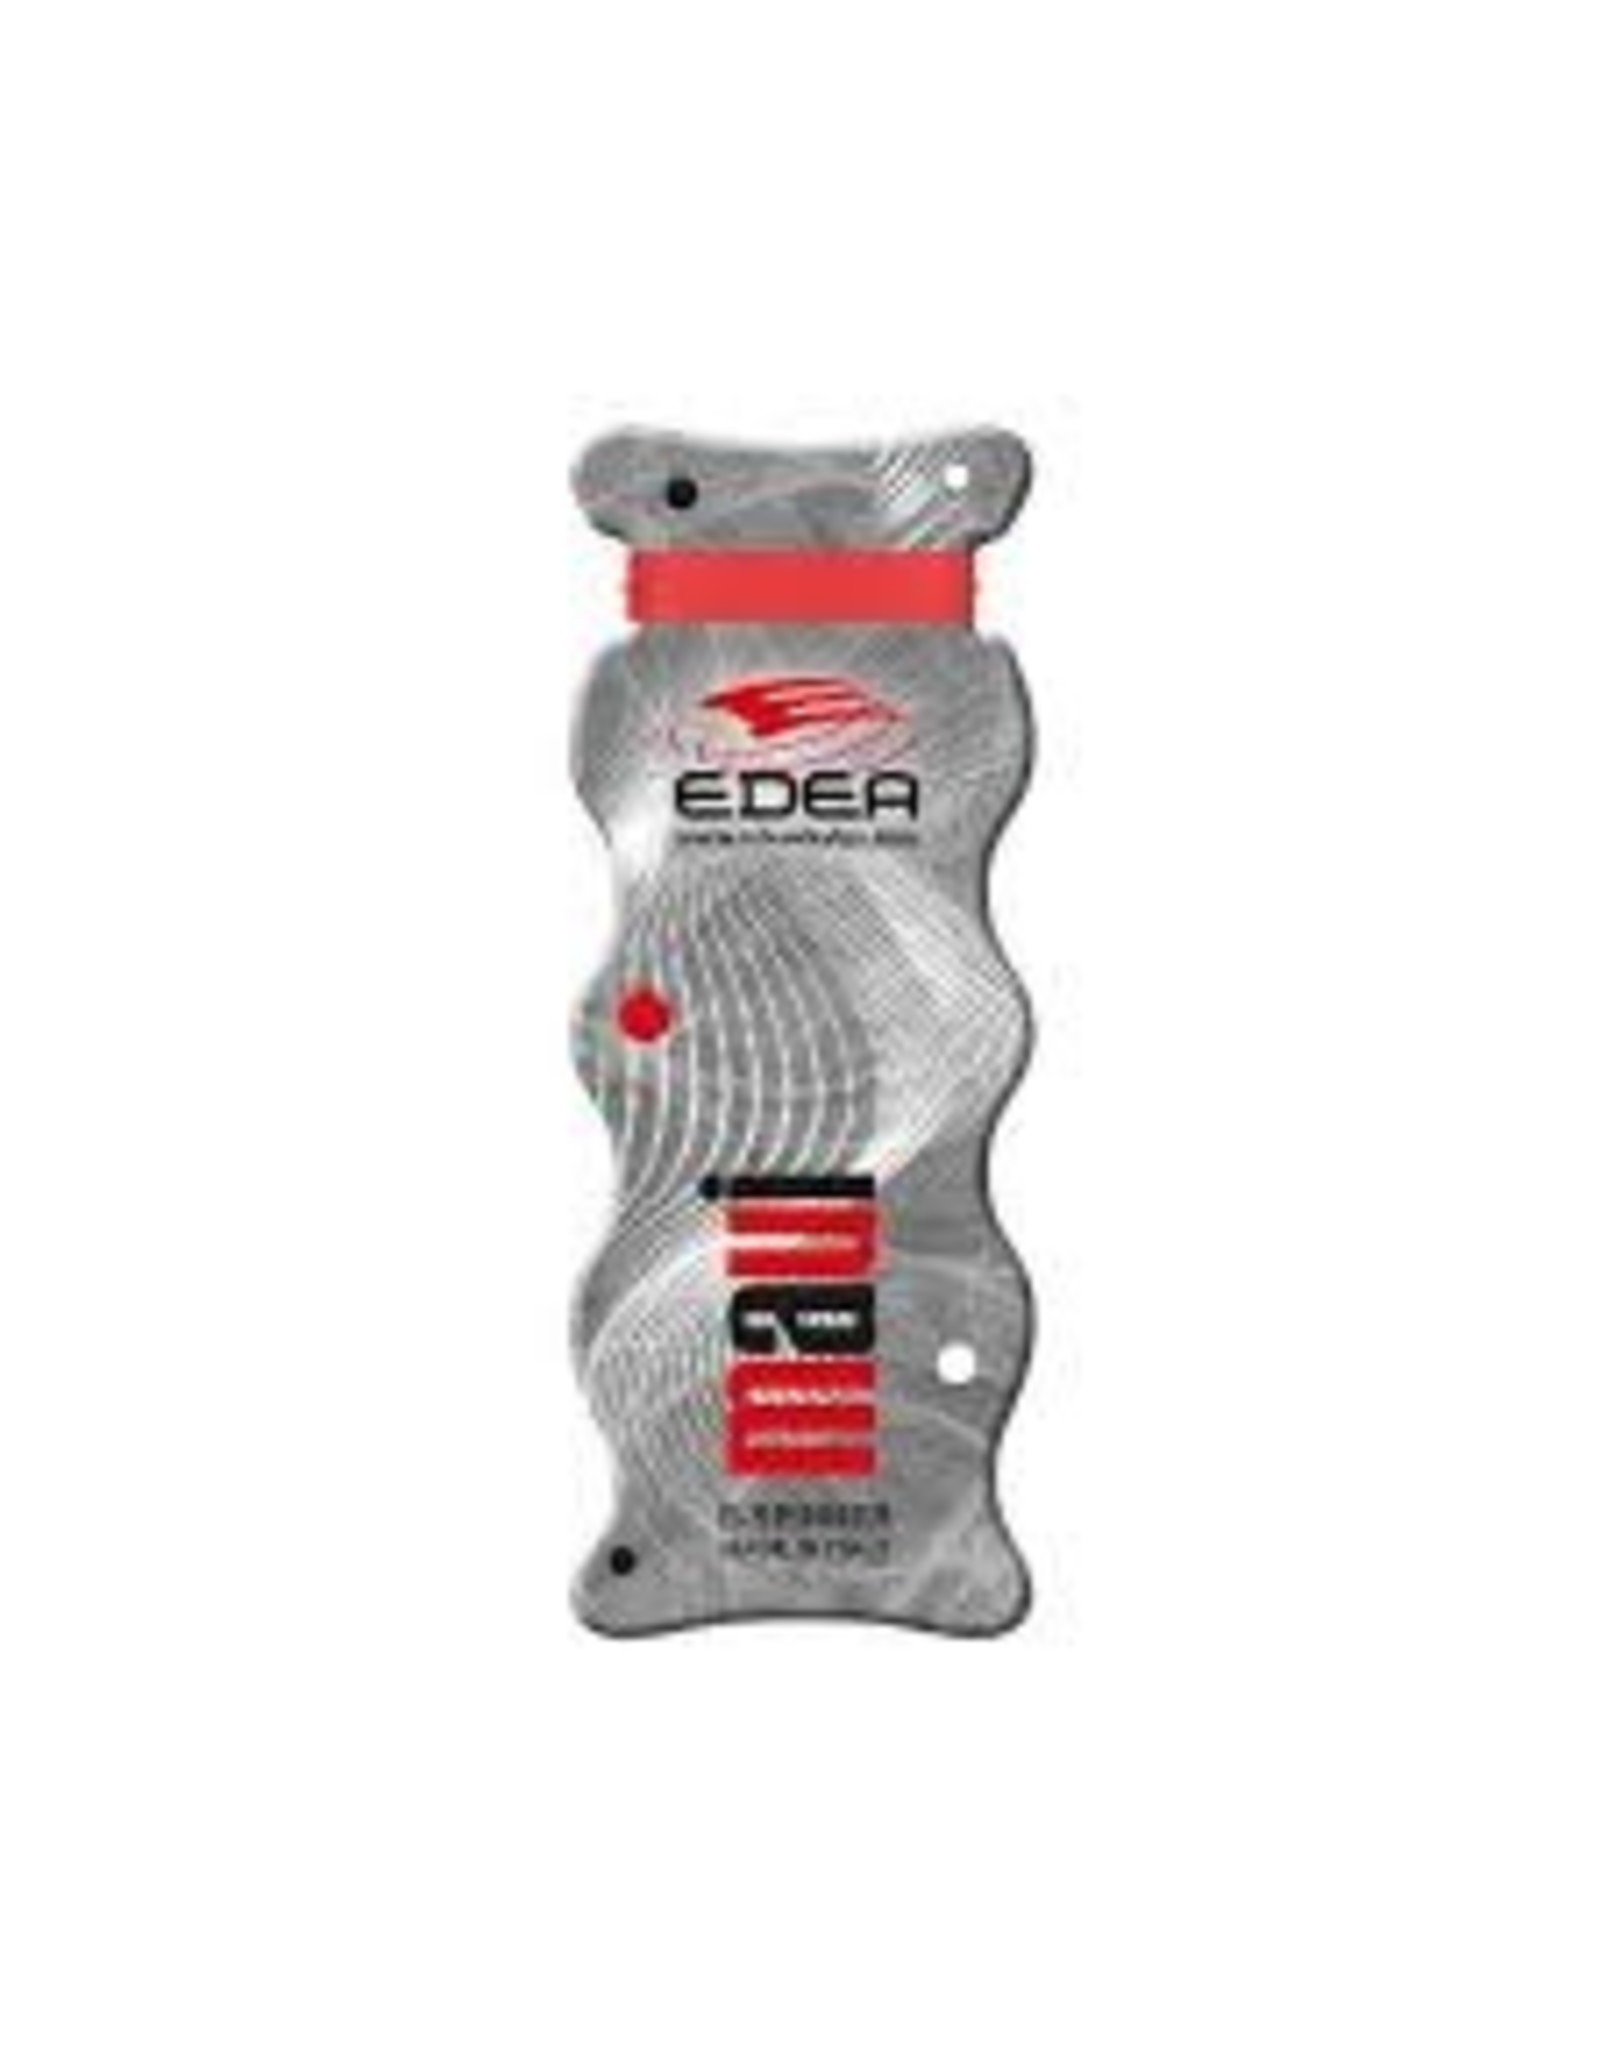 EDEA EDEA E-Spinner